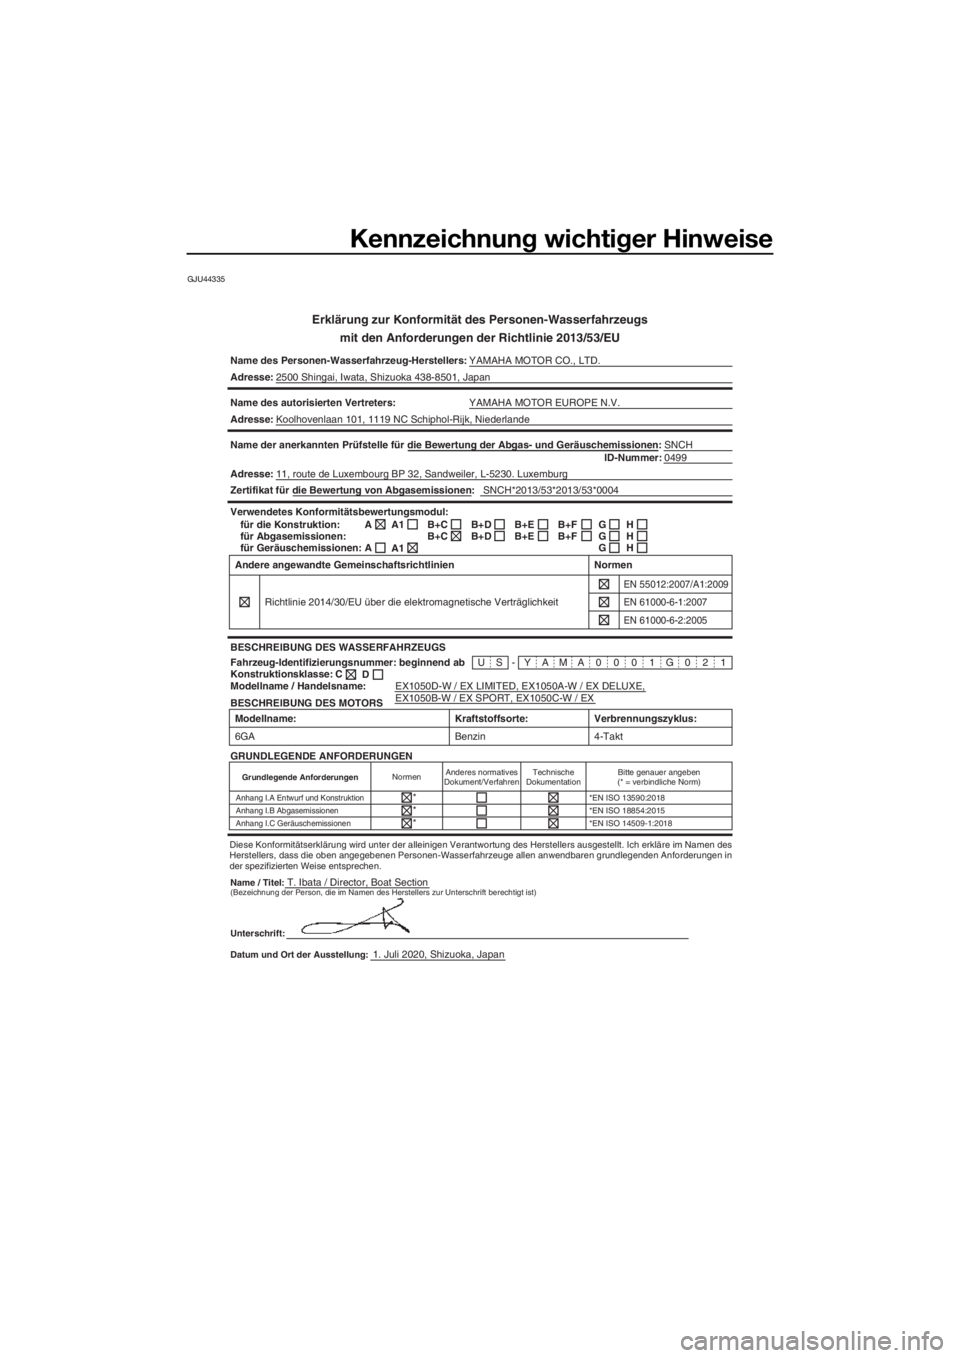 YAMAHA EX DELUXE 2021  Betriebsanleitungen (in German) Kennzeichnung wichtiger Hinweise
GJU44335
Erklärung zur Konformität des Personen-Wasserfahrzeugs
mit den Anforderun gen der Richtlinie 2013/53/EU
Name des Personen-Wasserfahrzeug-Herstellers: YAMAHA